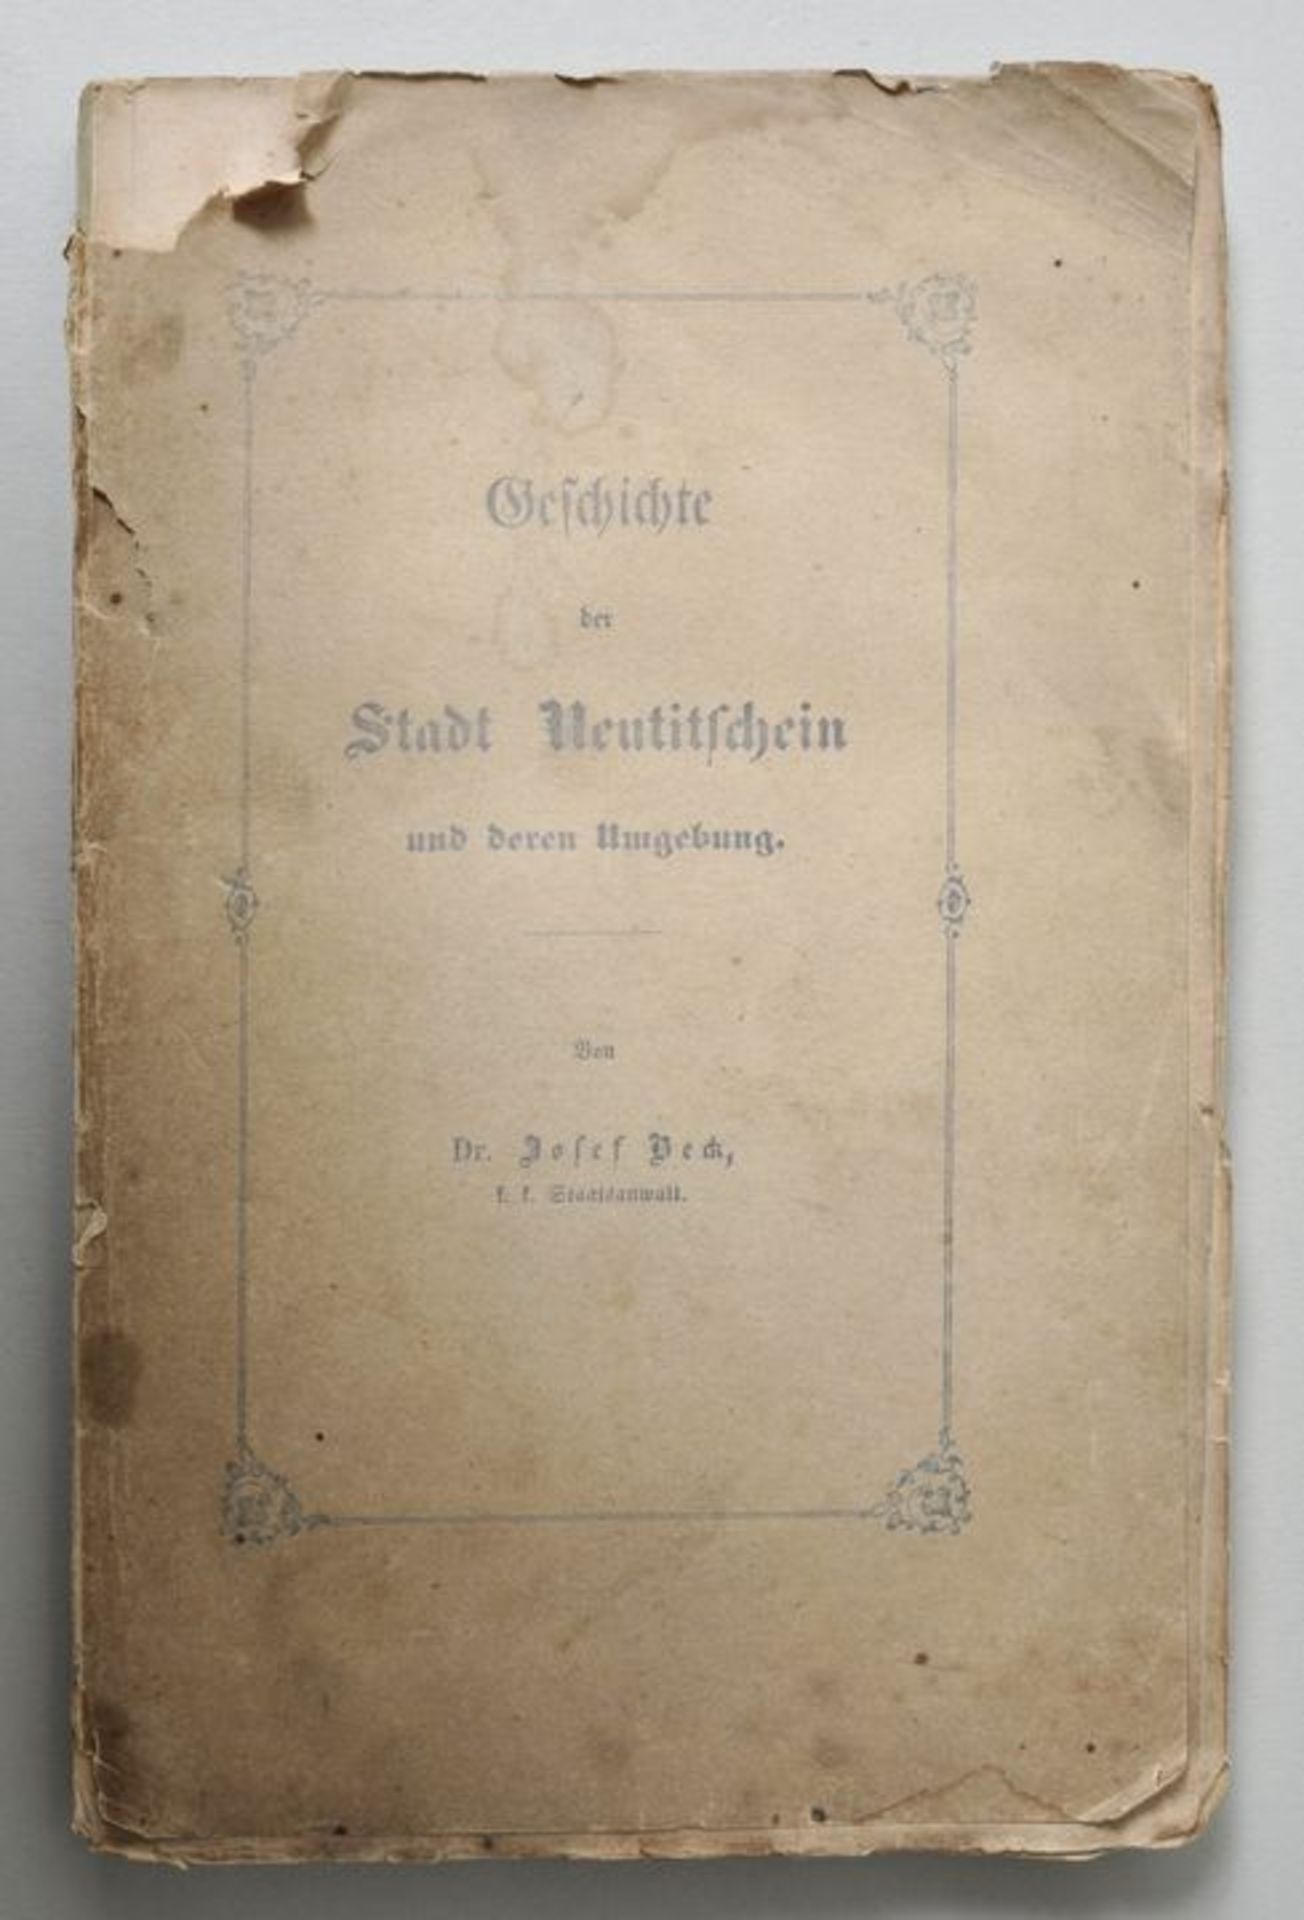 BuchBeck, Josef: Geschichte der Stadt Neutitschein (Nový Jicín). Neutitschein: Eigenverlag des